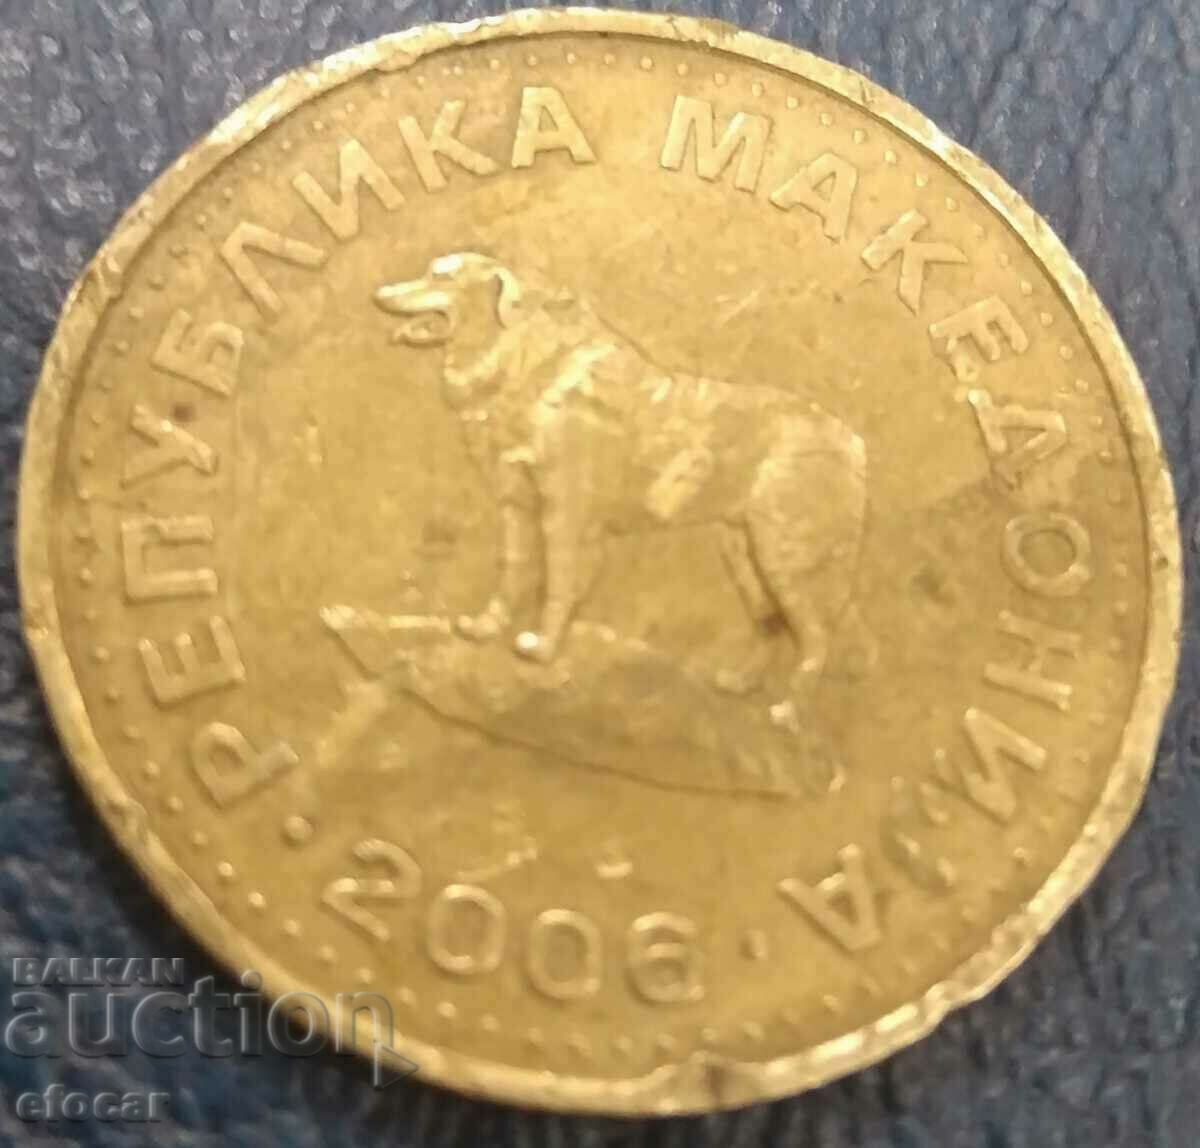 1 динар Македония 2006